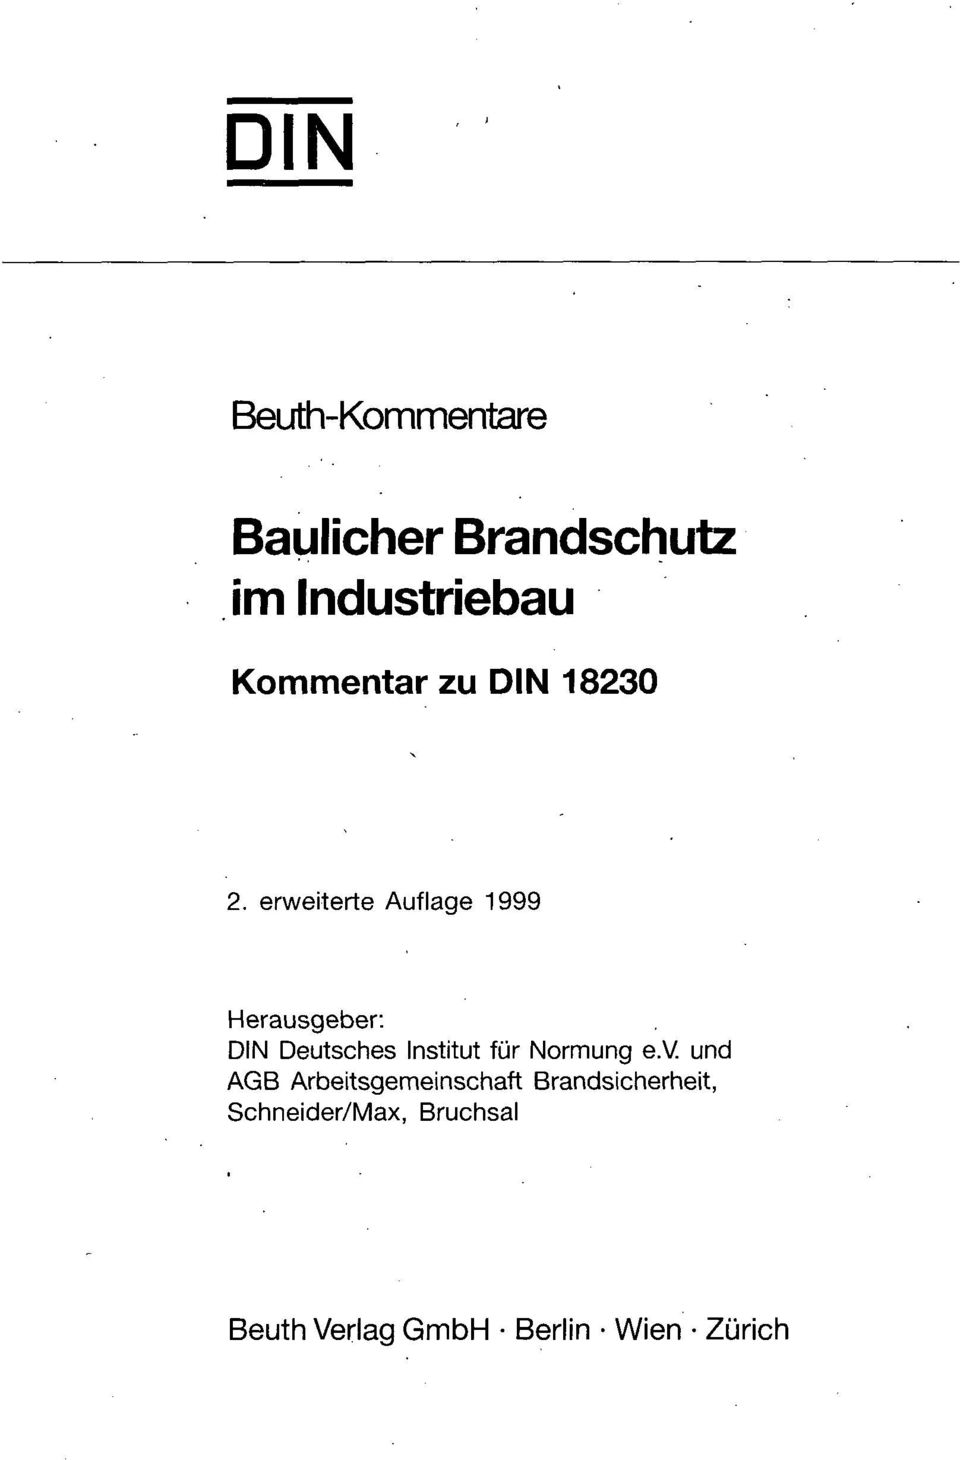 erweiterte Auflage 1999 Herausgeber: DIN Deutsches Institut für